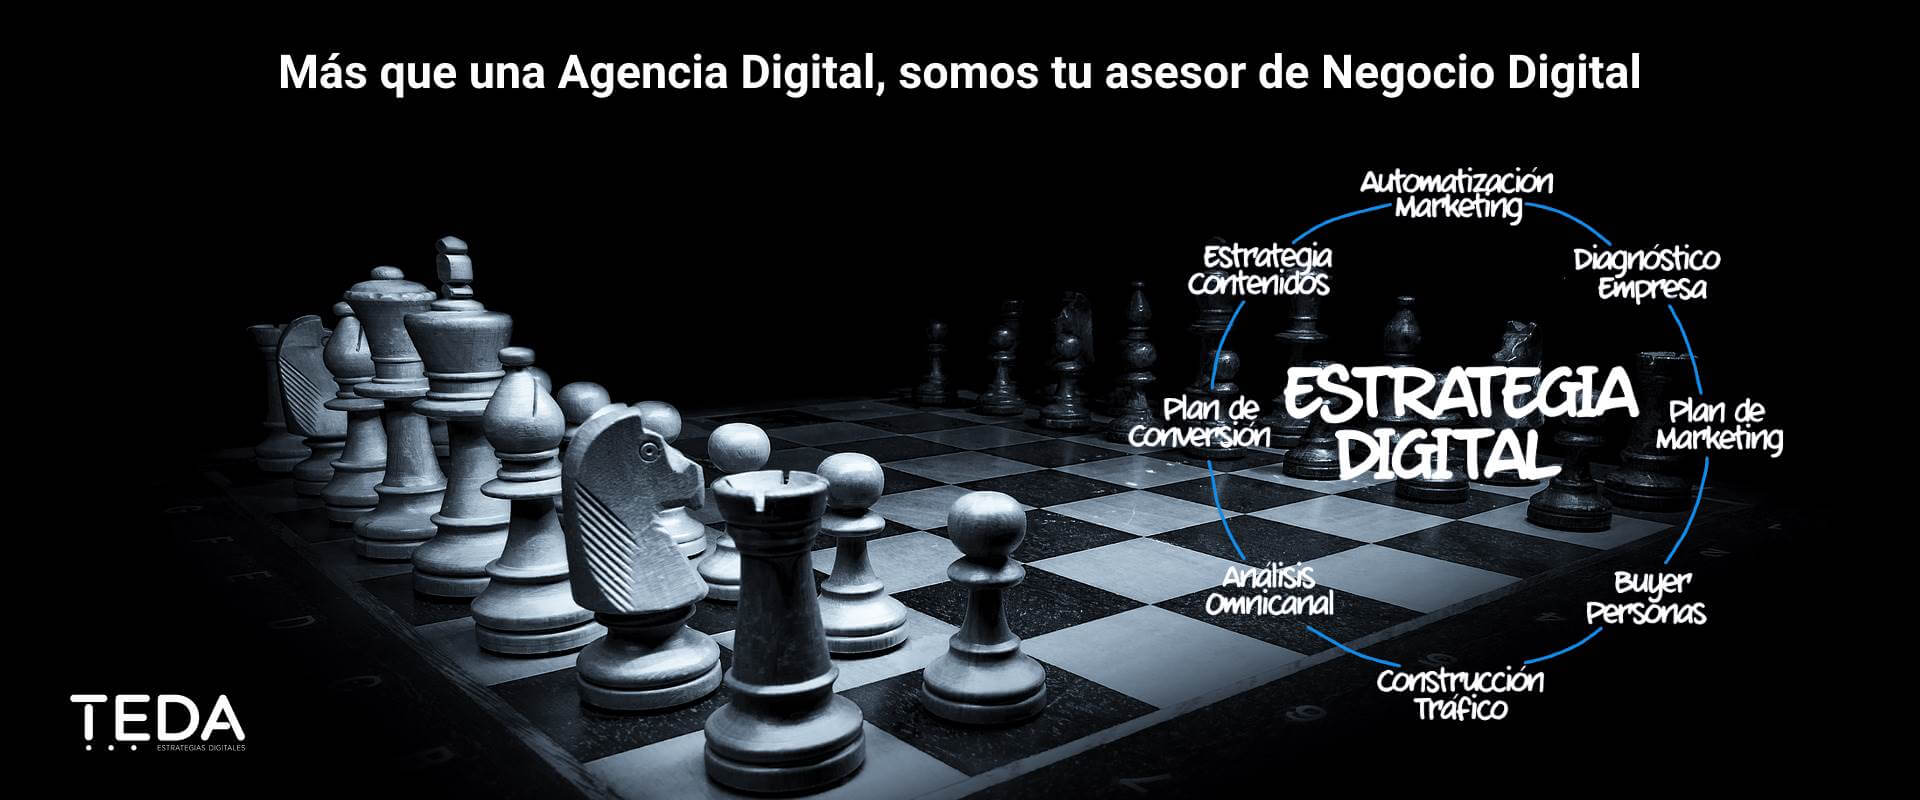 TEDA Agencia de Marketing Digital México